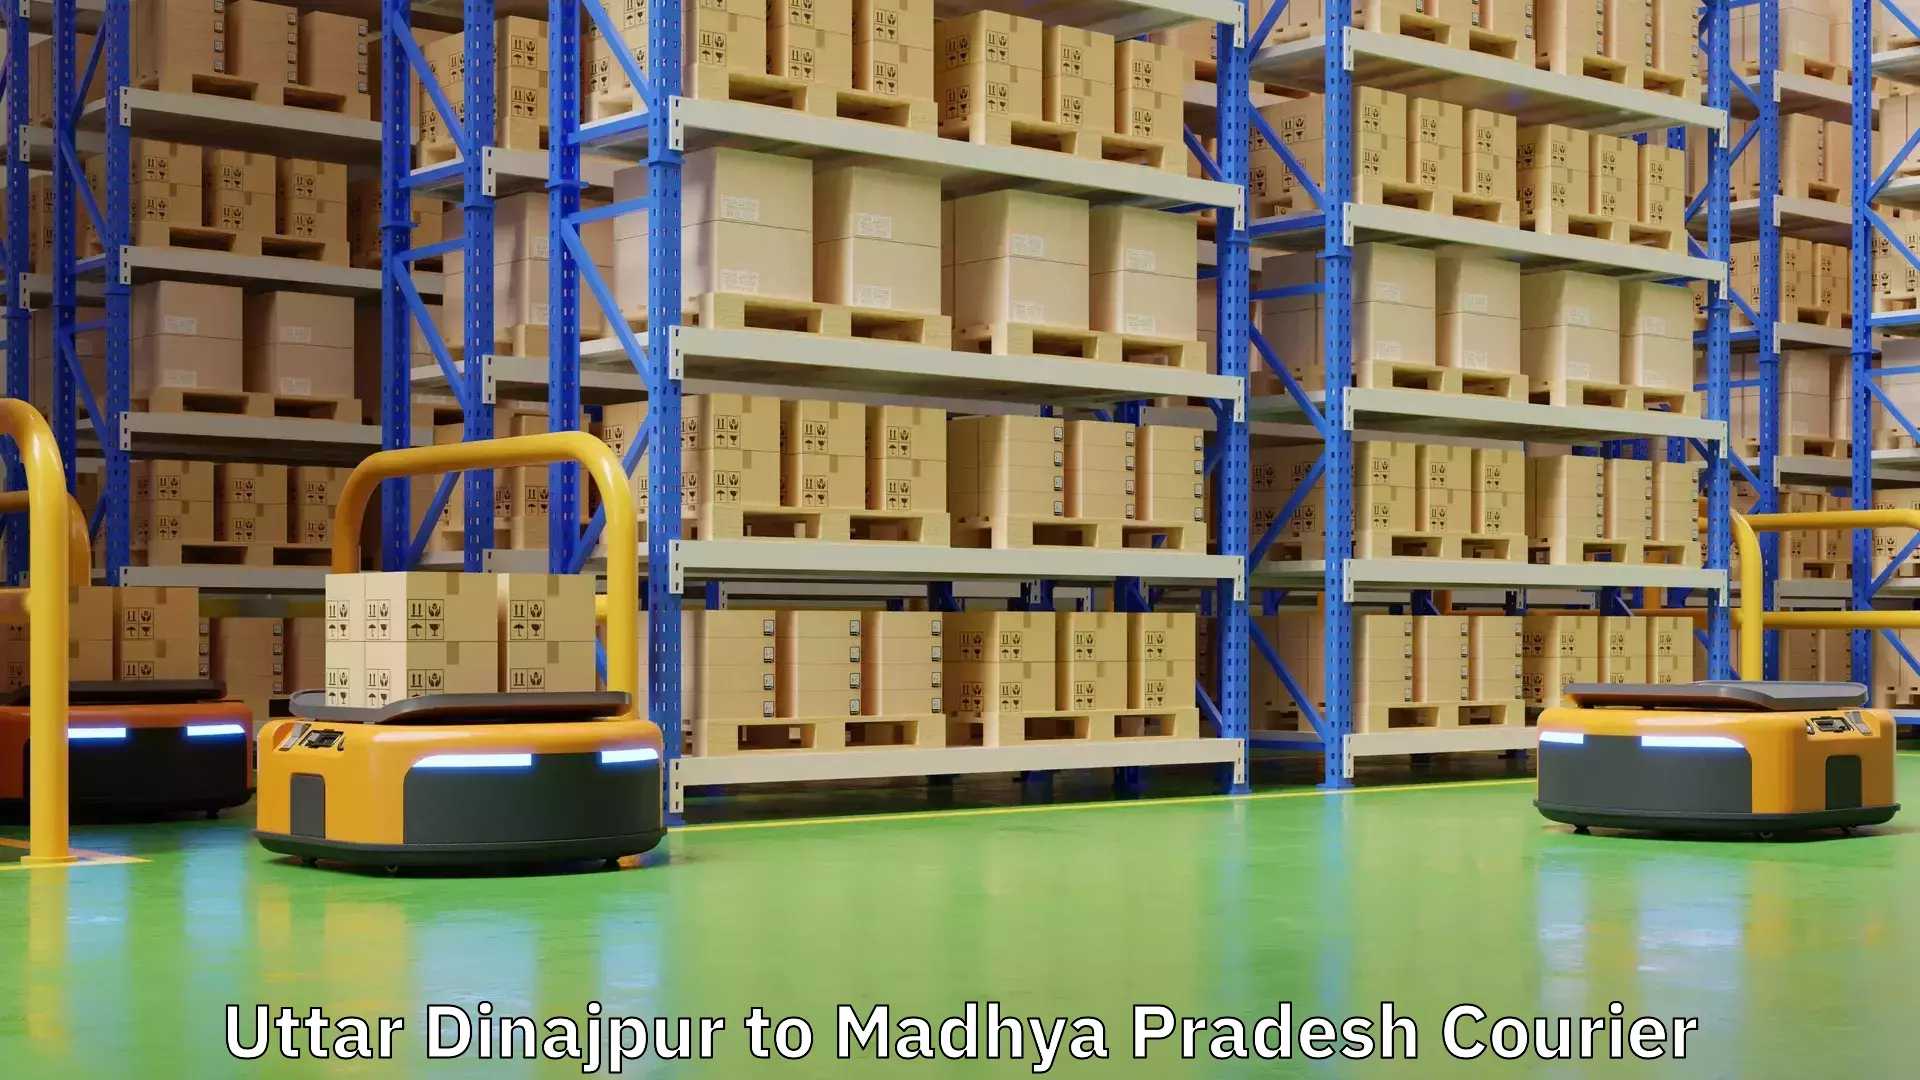 Multi-service courier options Uttar Dinajpur to Madhya Pradesh